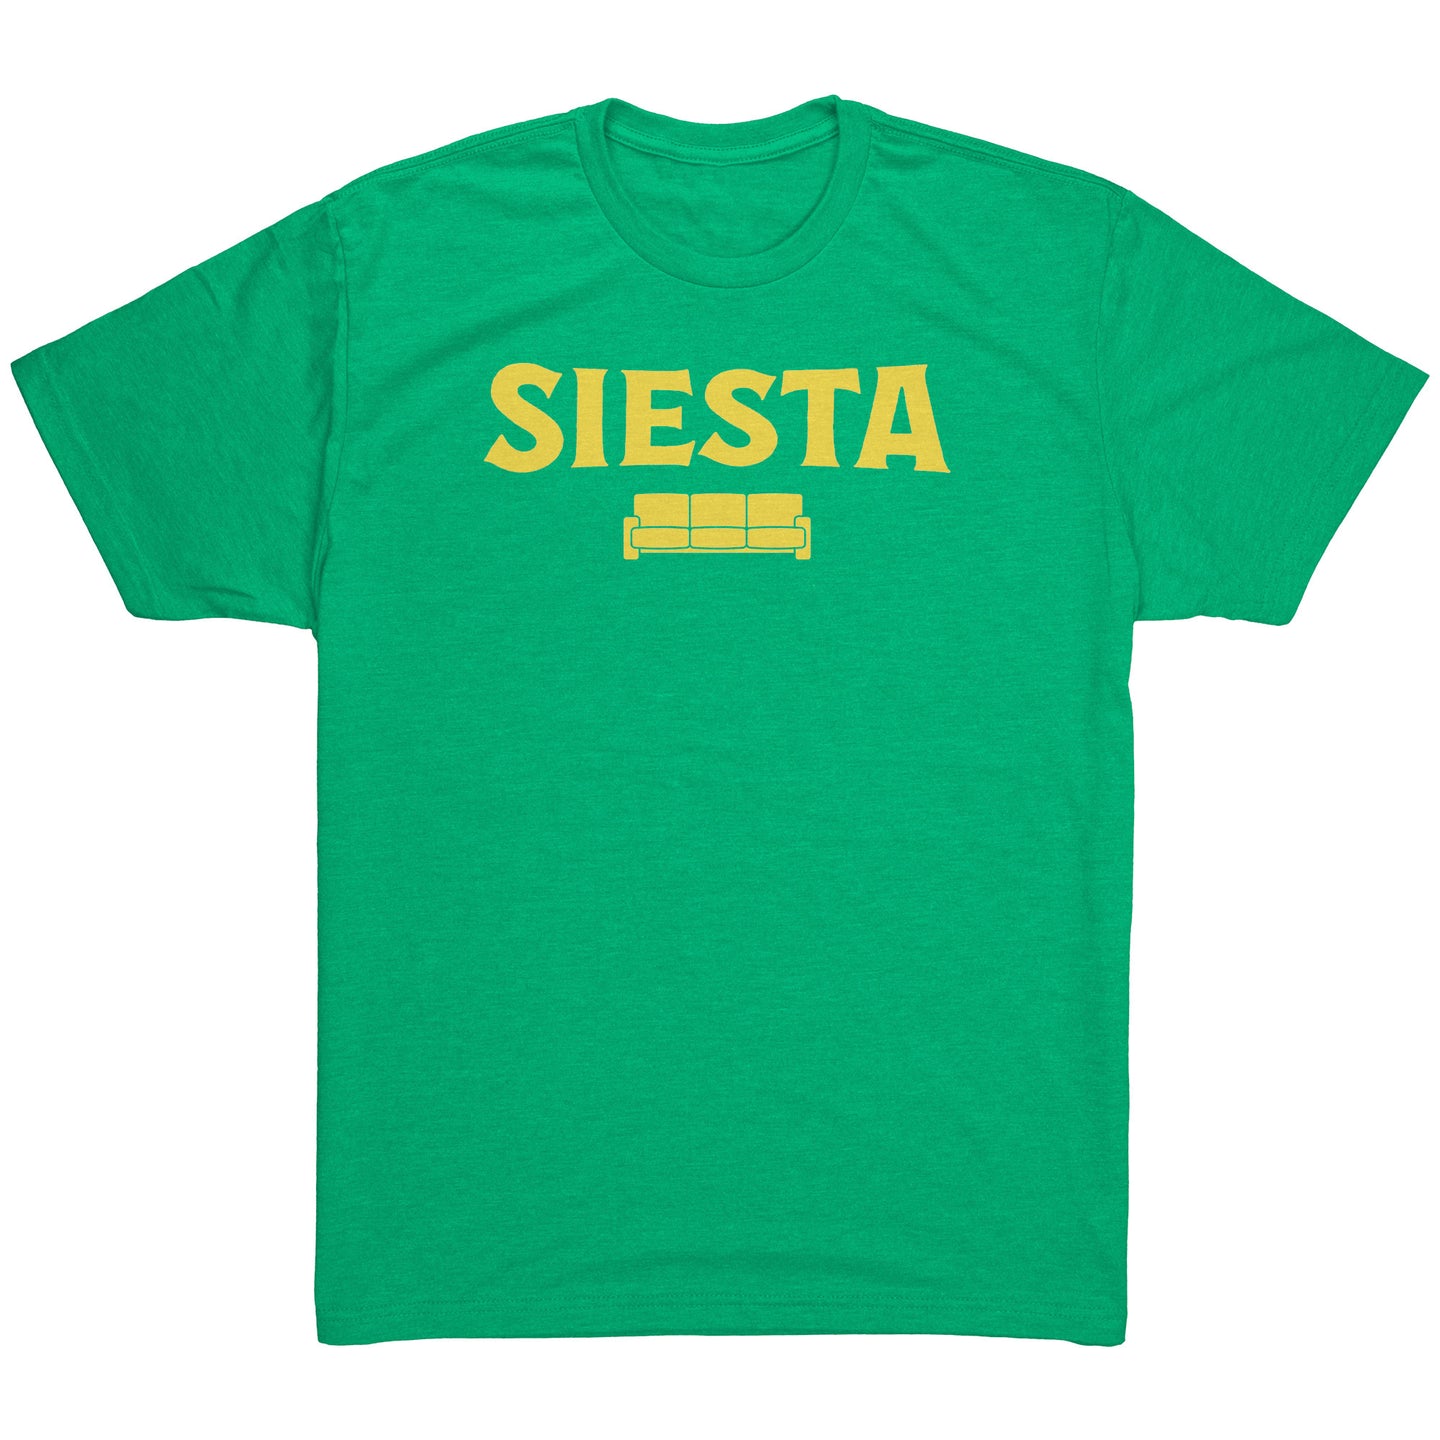 SIESTA! t-shirt